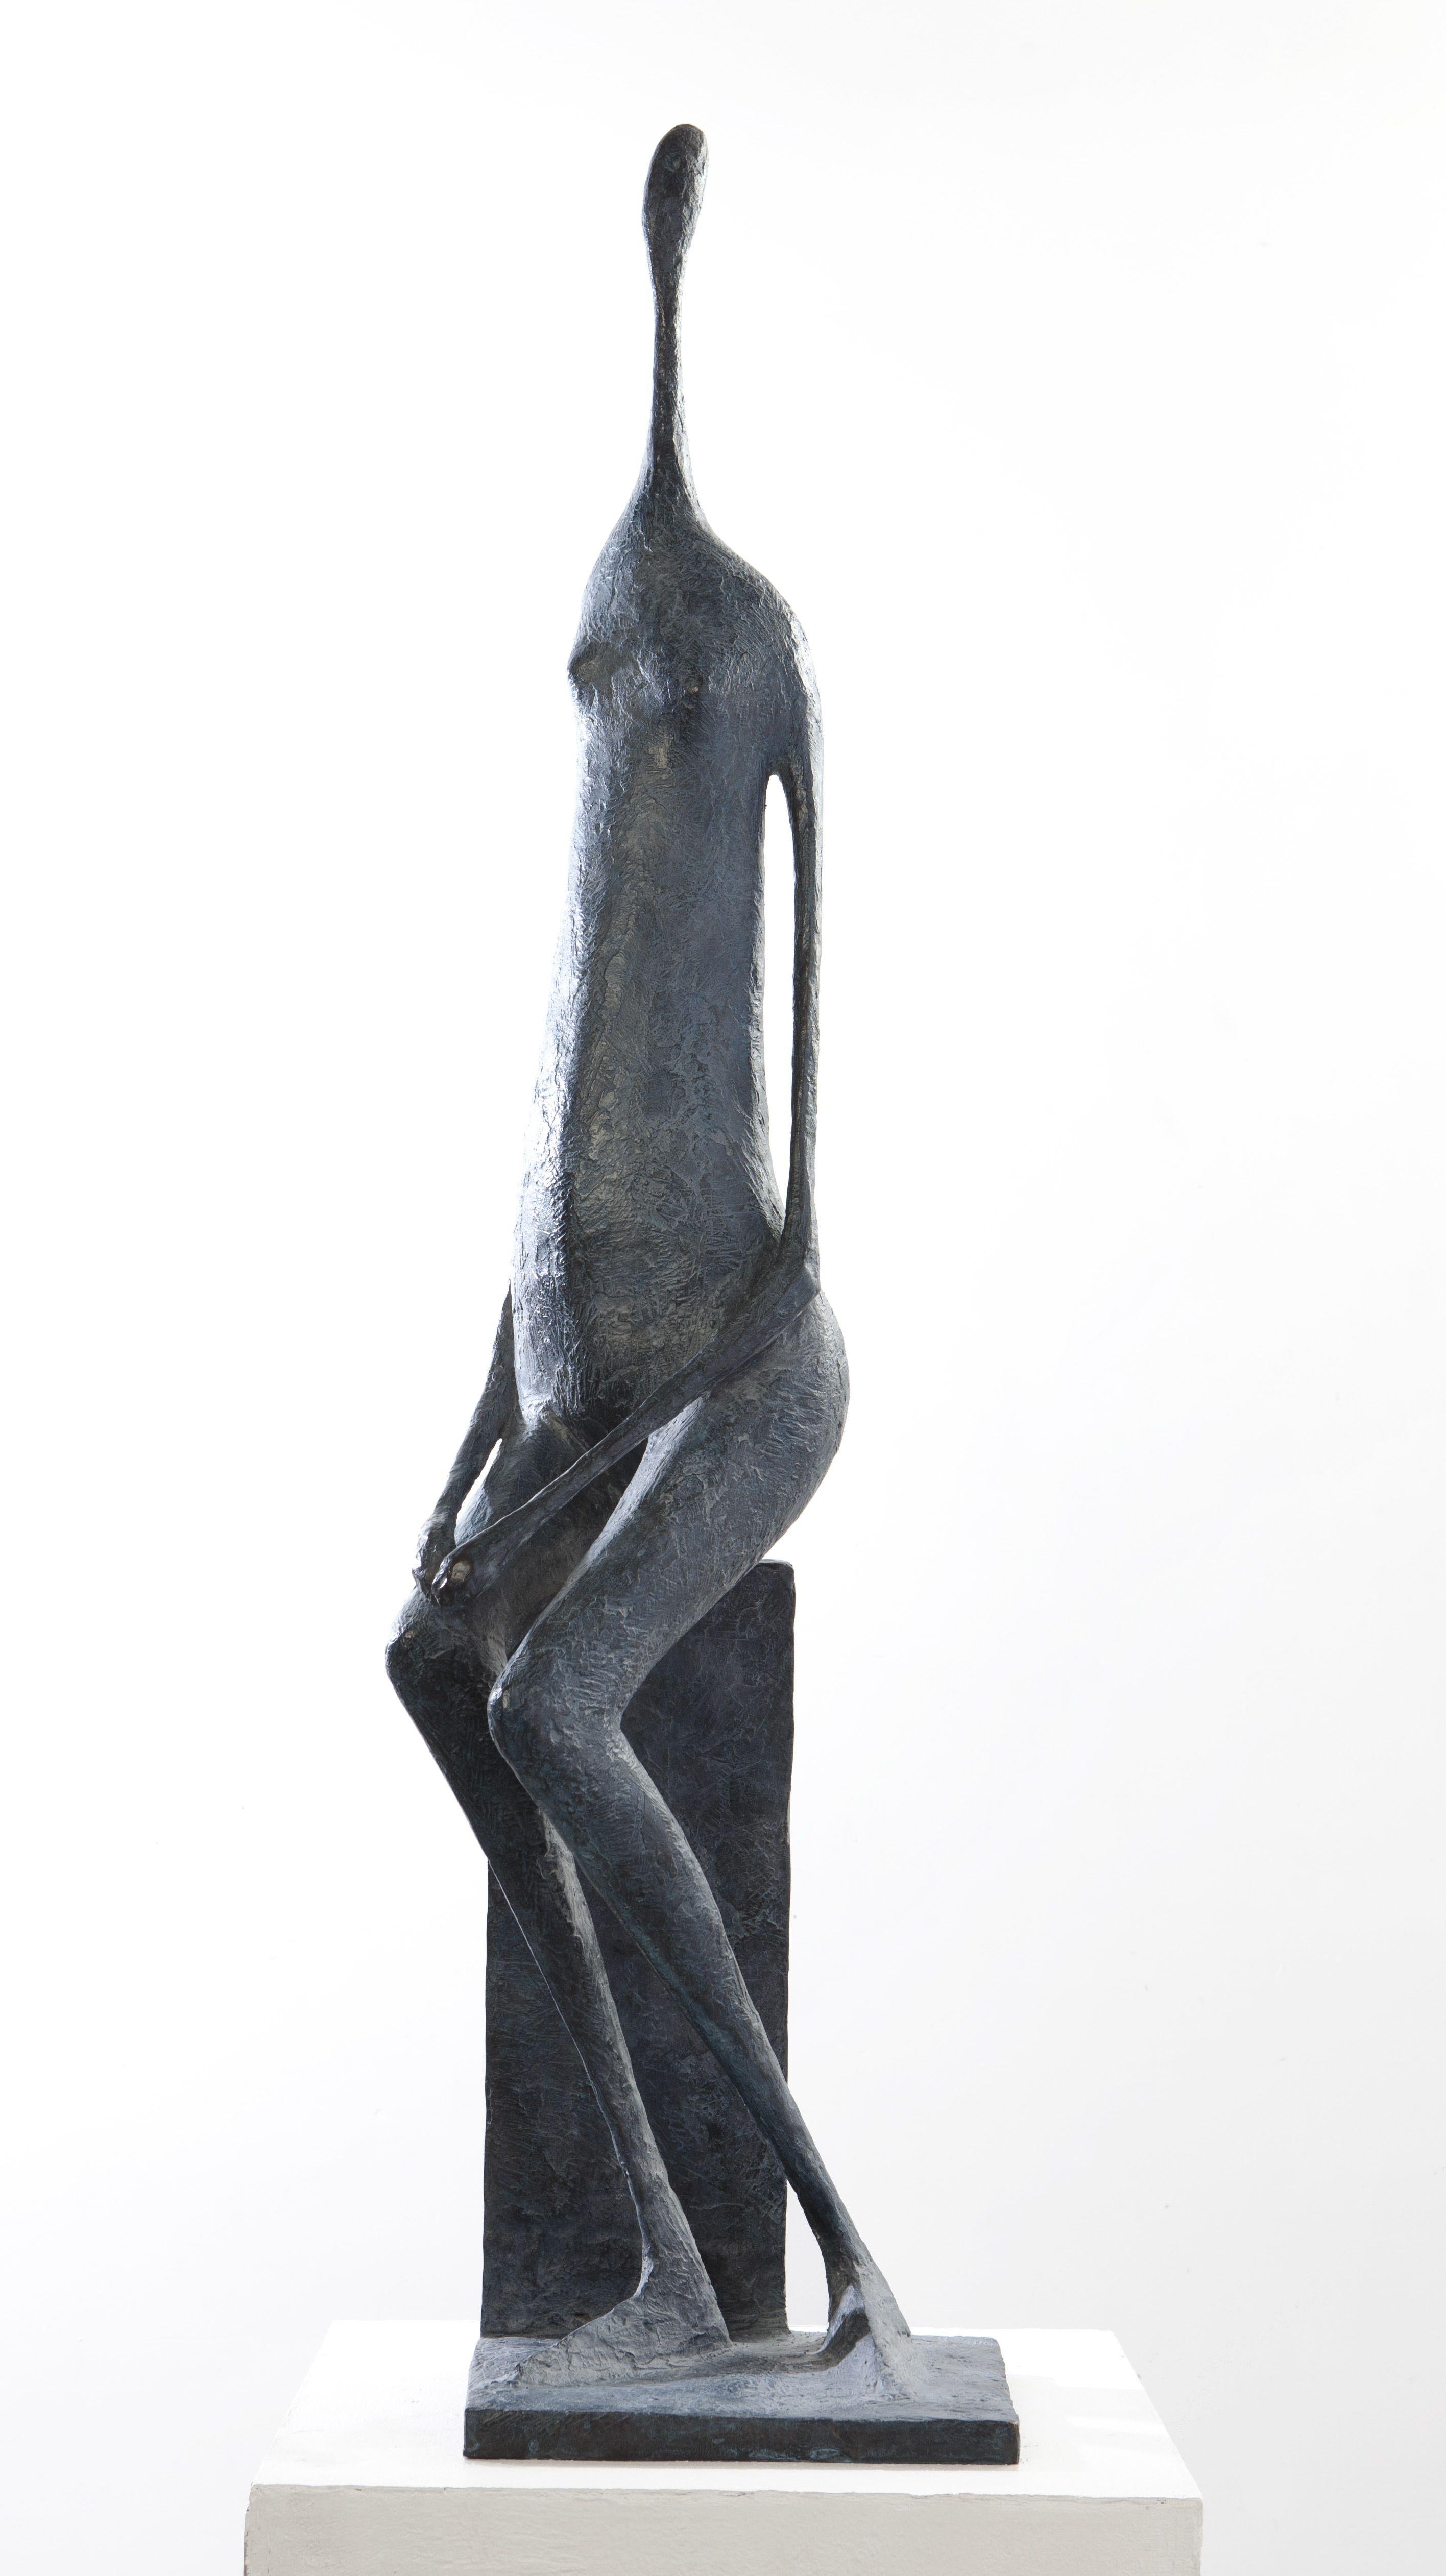 Grande figure assise I (Large Seared Figure I)  est une sculpture à grande échelle de l'artiste contemporain français Pierre Yermia. Bronze, 111 cm × 24 cm × 22 cm. Edition de 8 + 4 A.P. Chaque pièce est signée et numérotée. 
Pierre Yermia développe